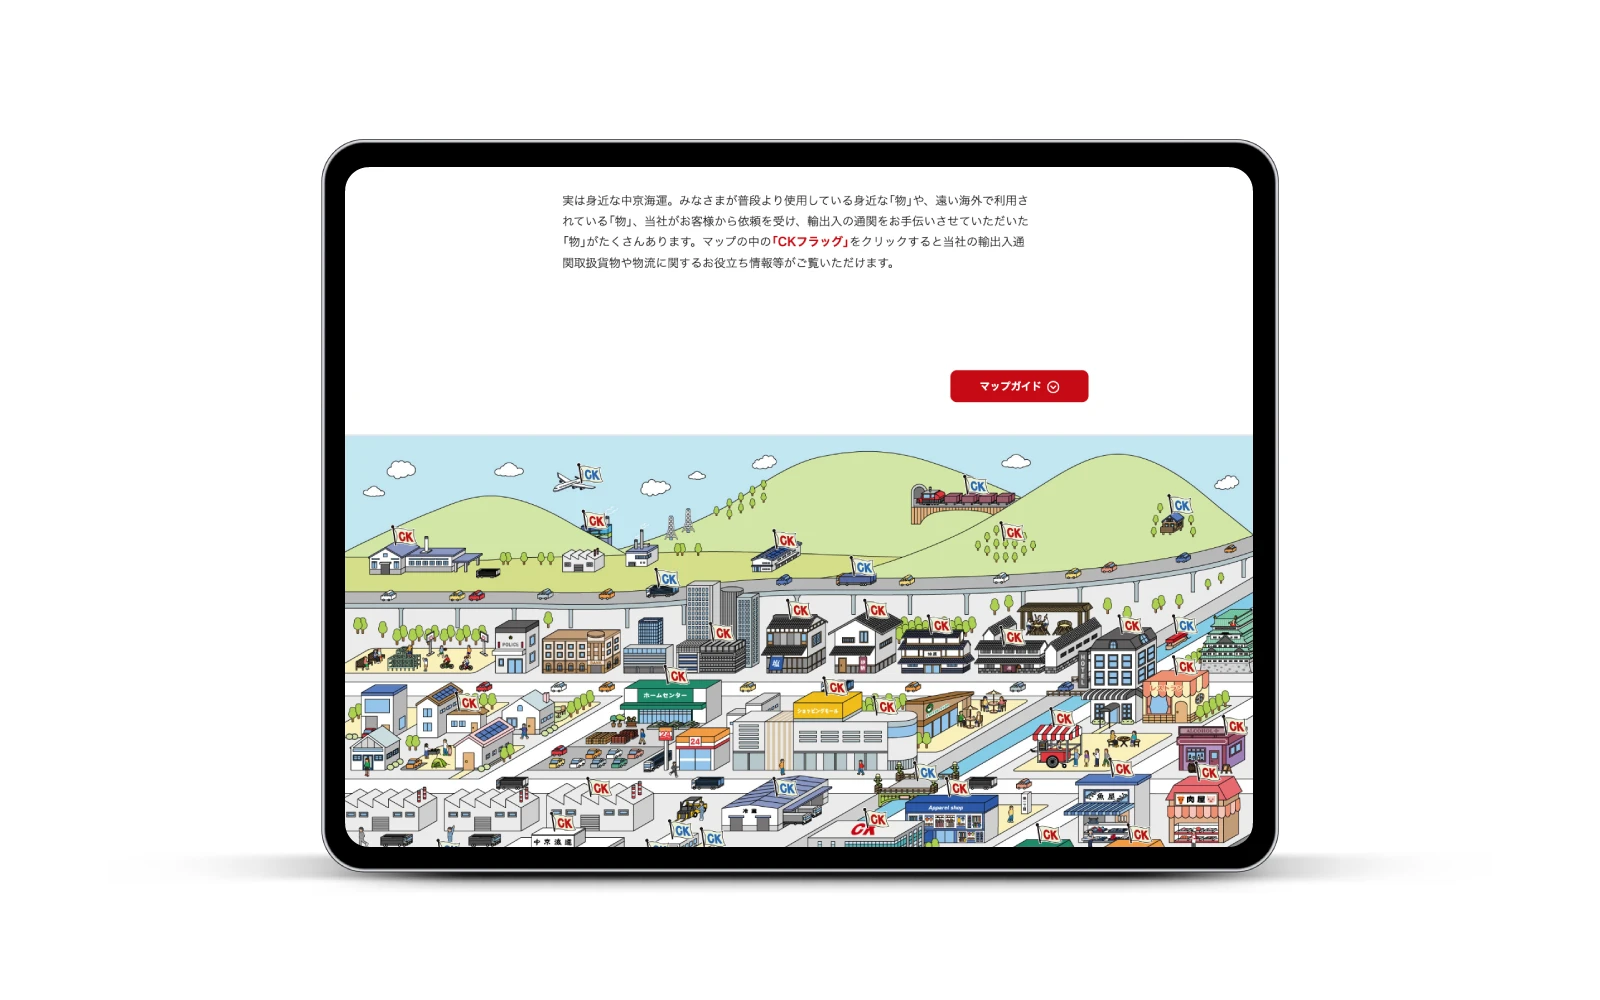 中京海運株式会社 / コーポレートサイト